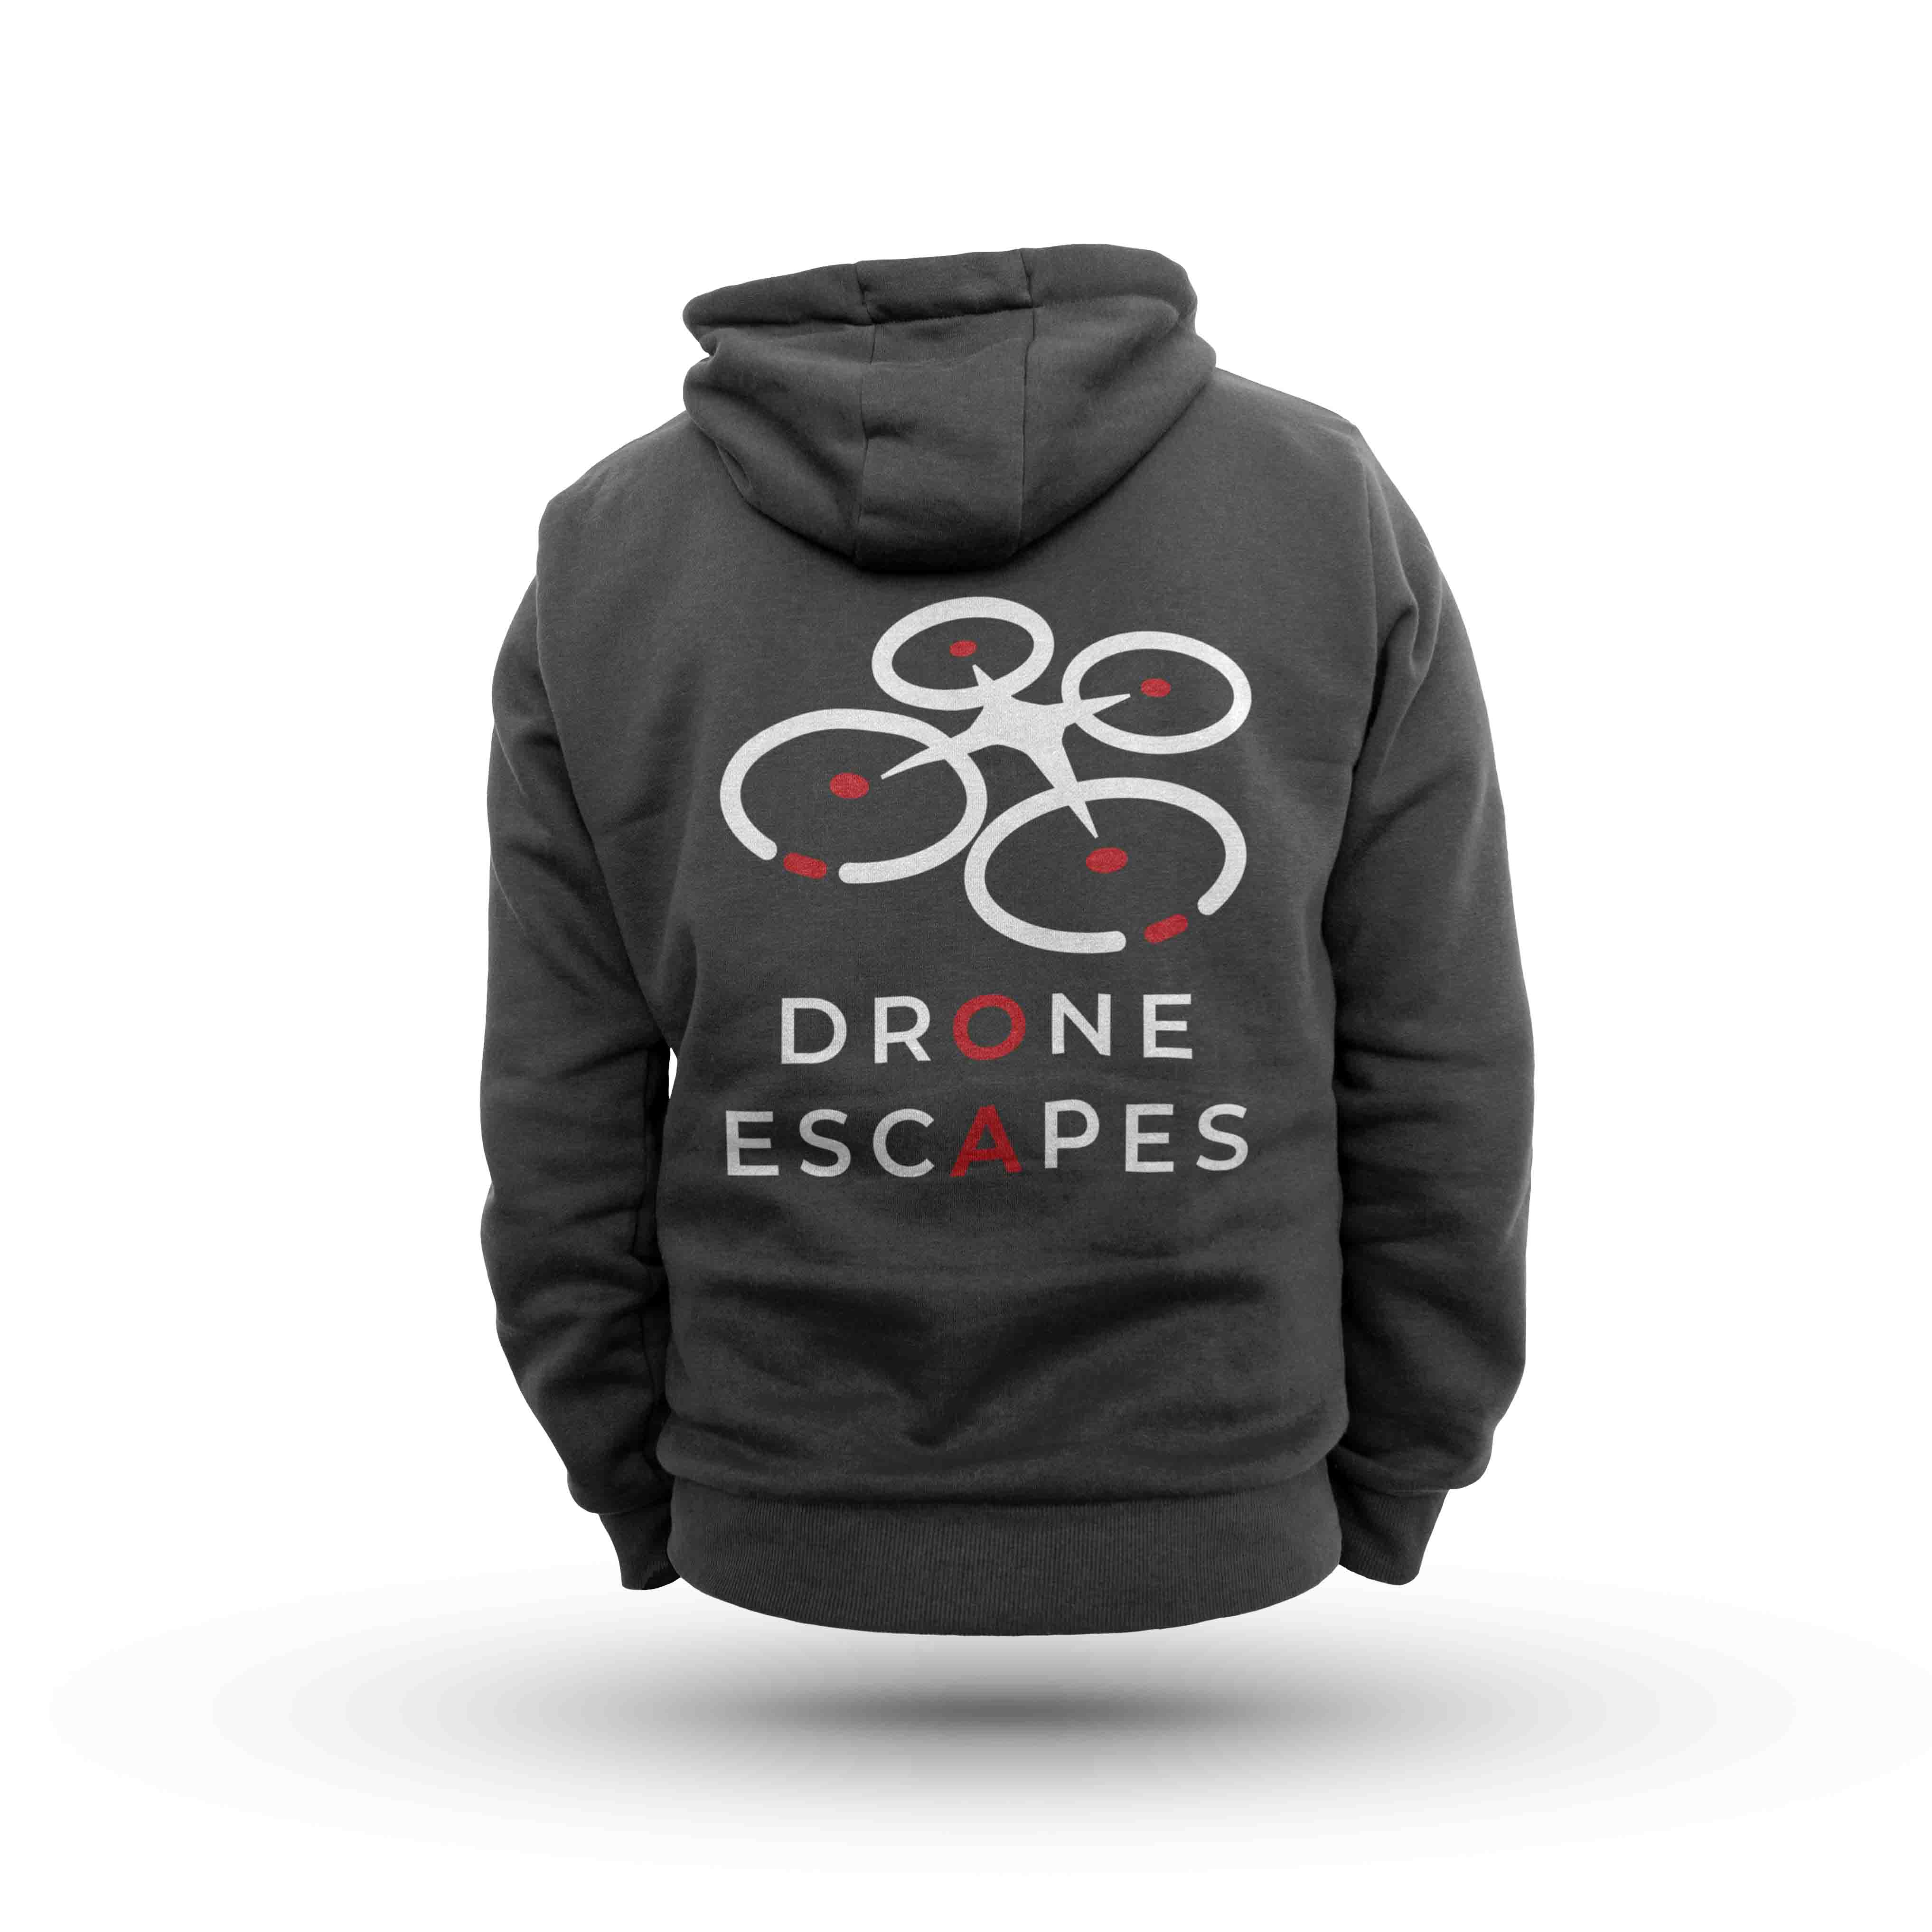 drone-escapes-promo-item